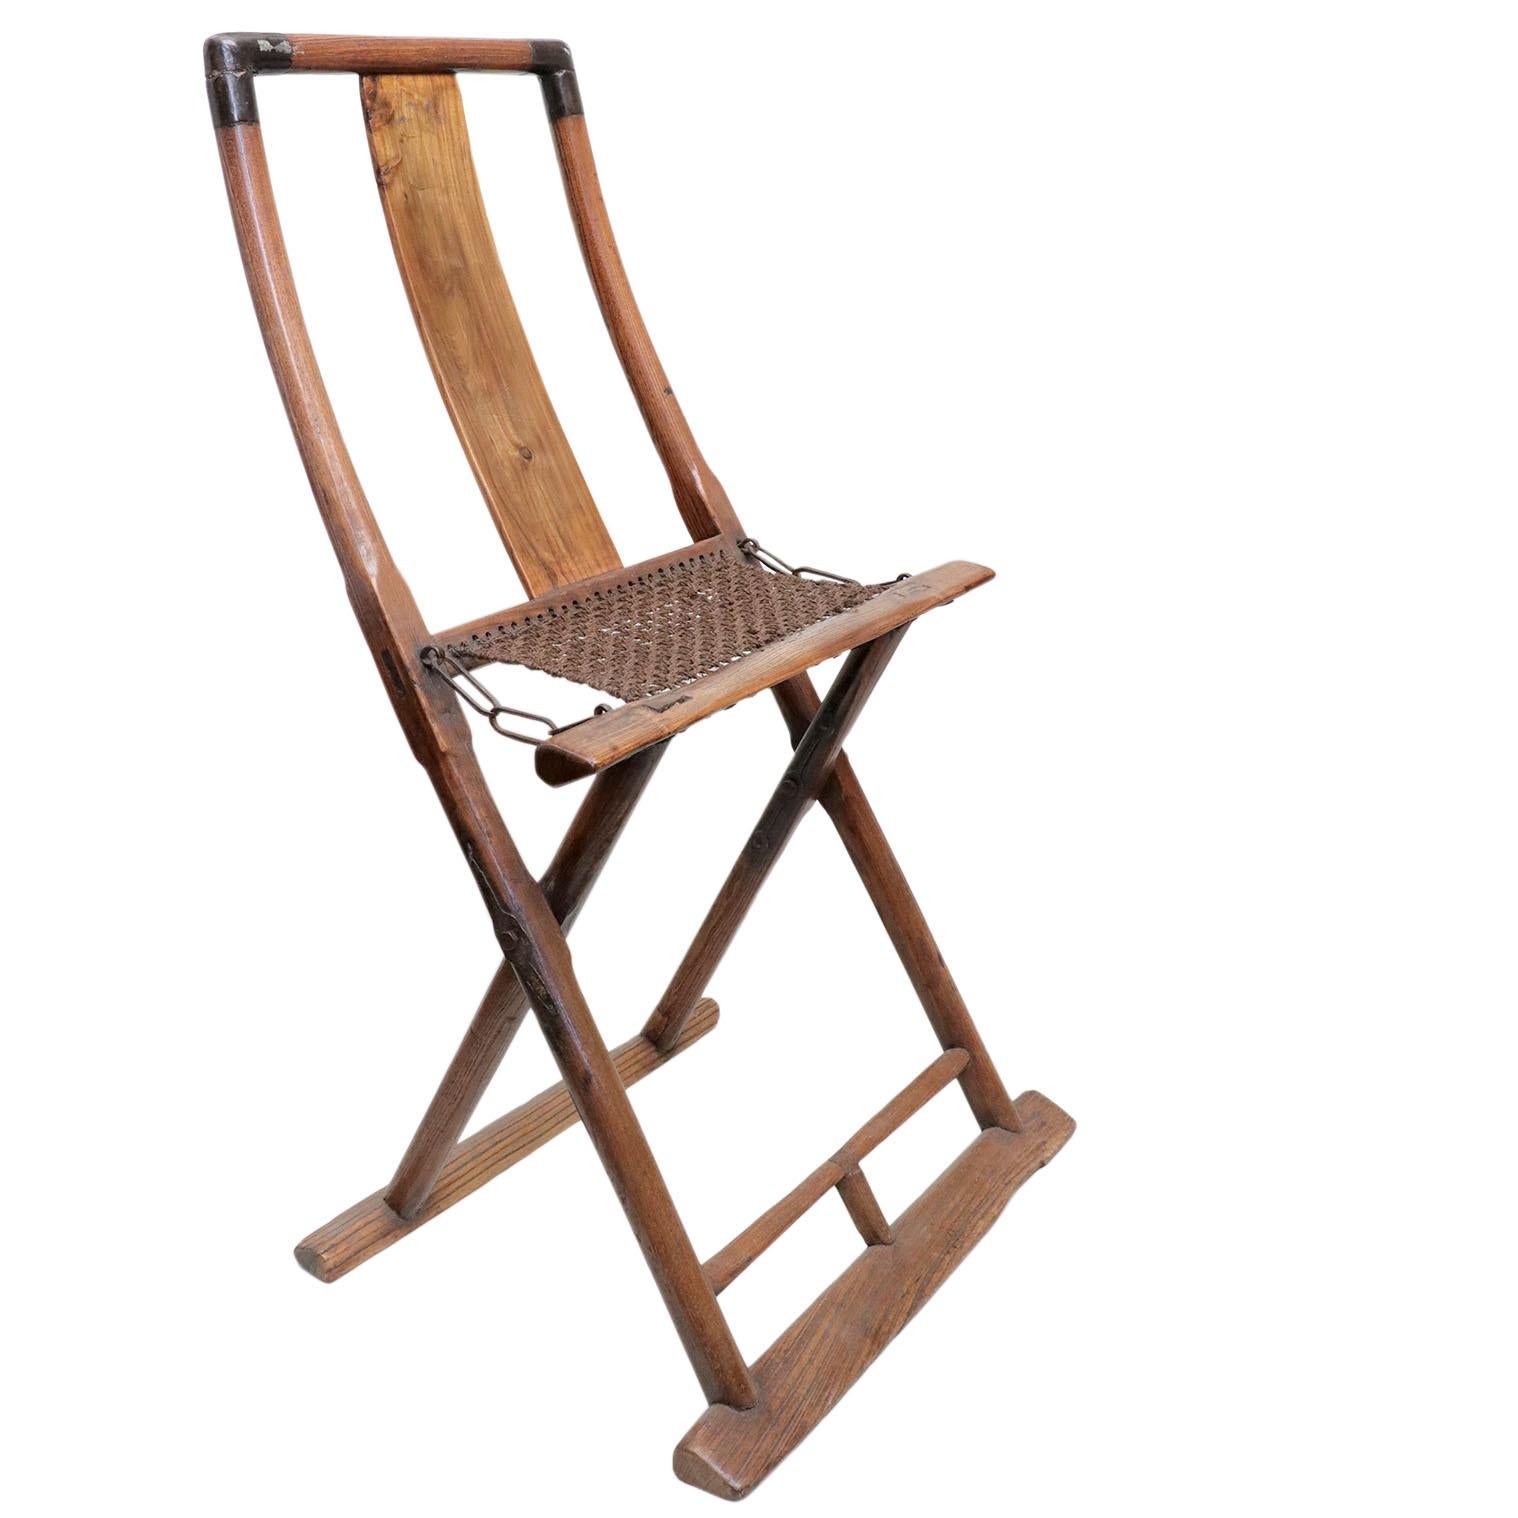 Chinesischer Holzklappstuhl mit einer Sitzfläche von 16